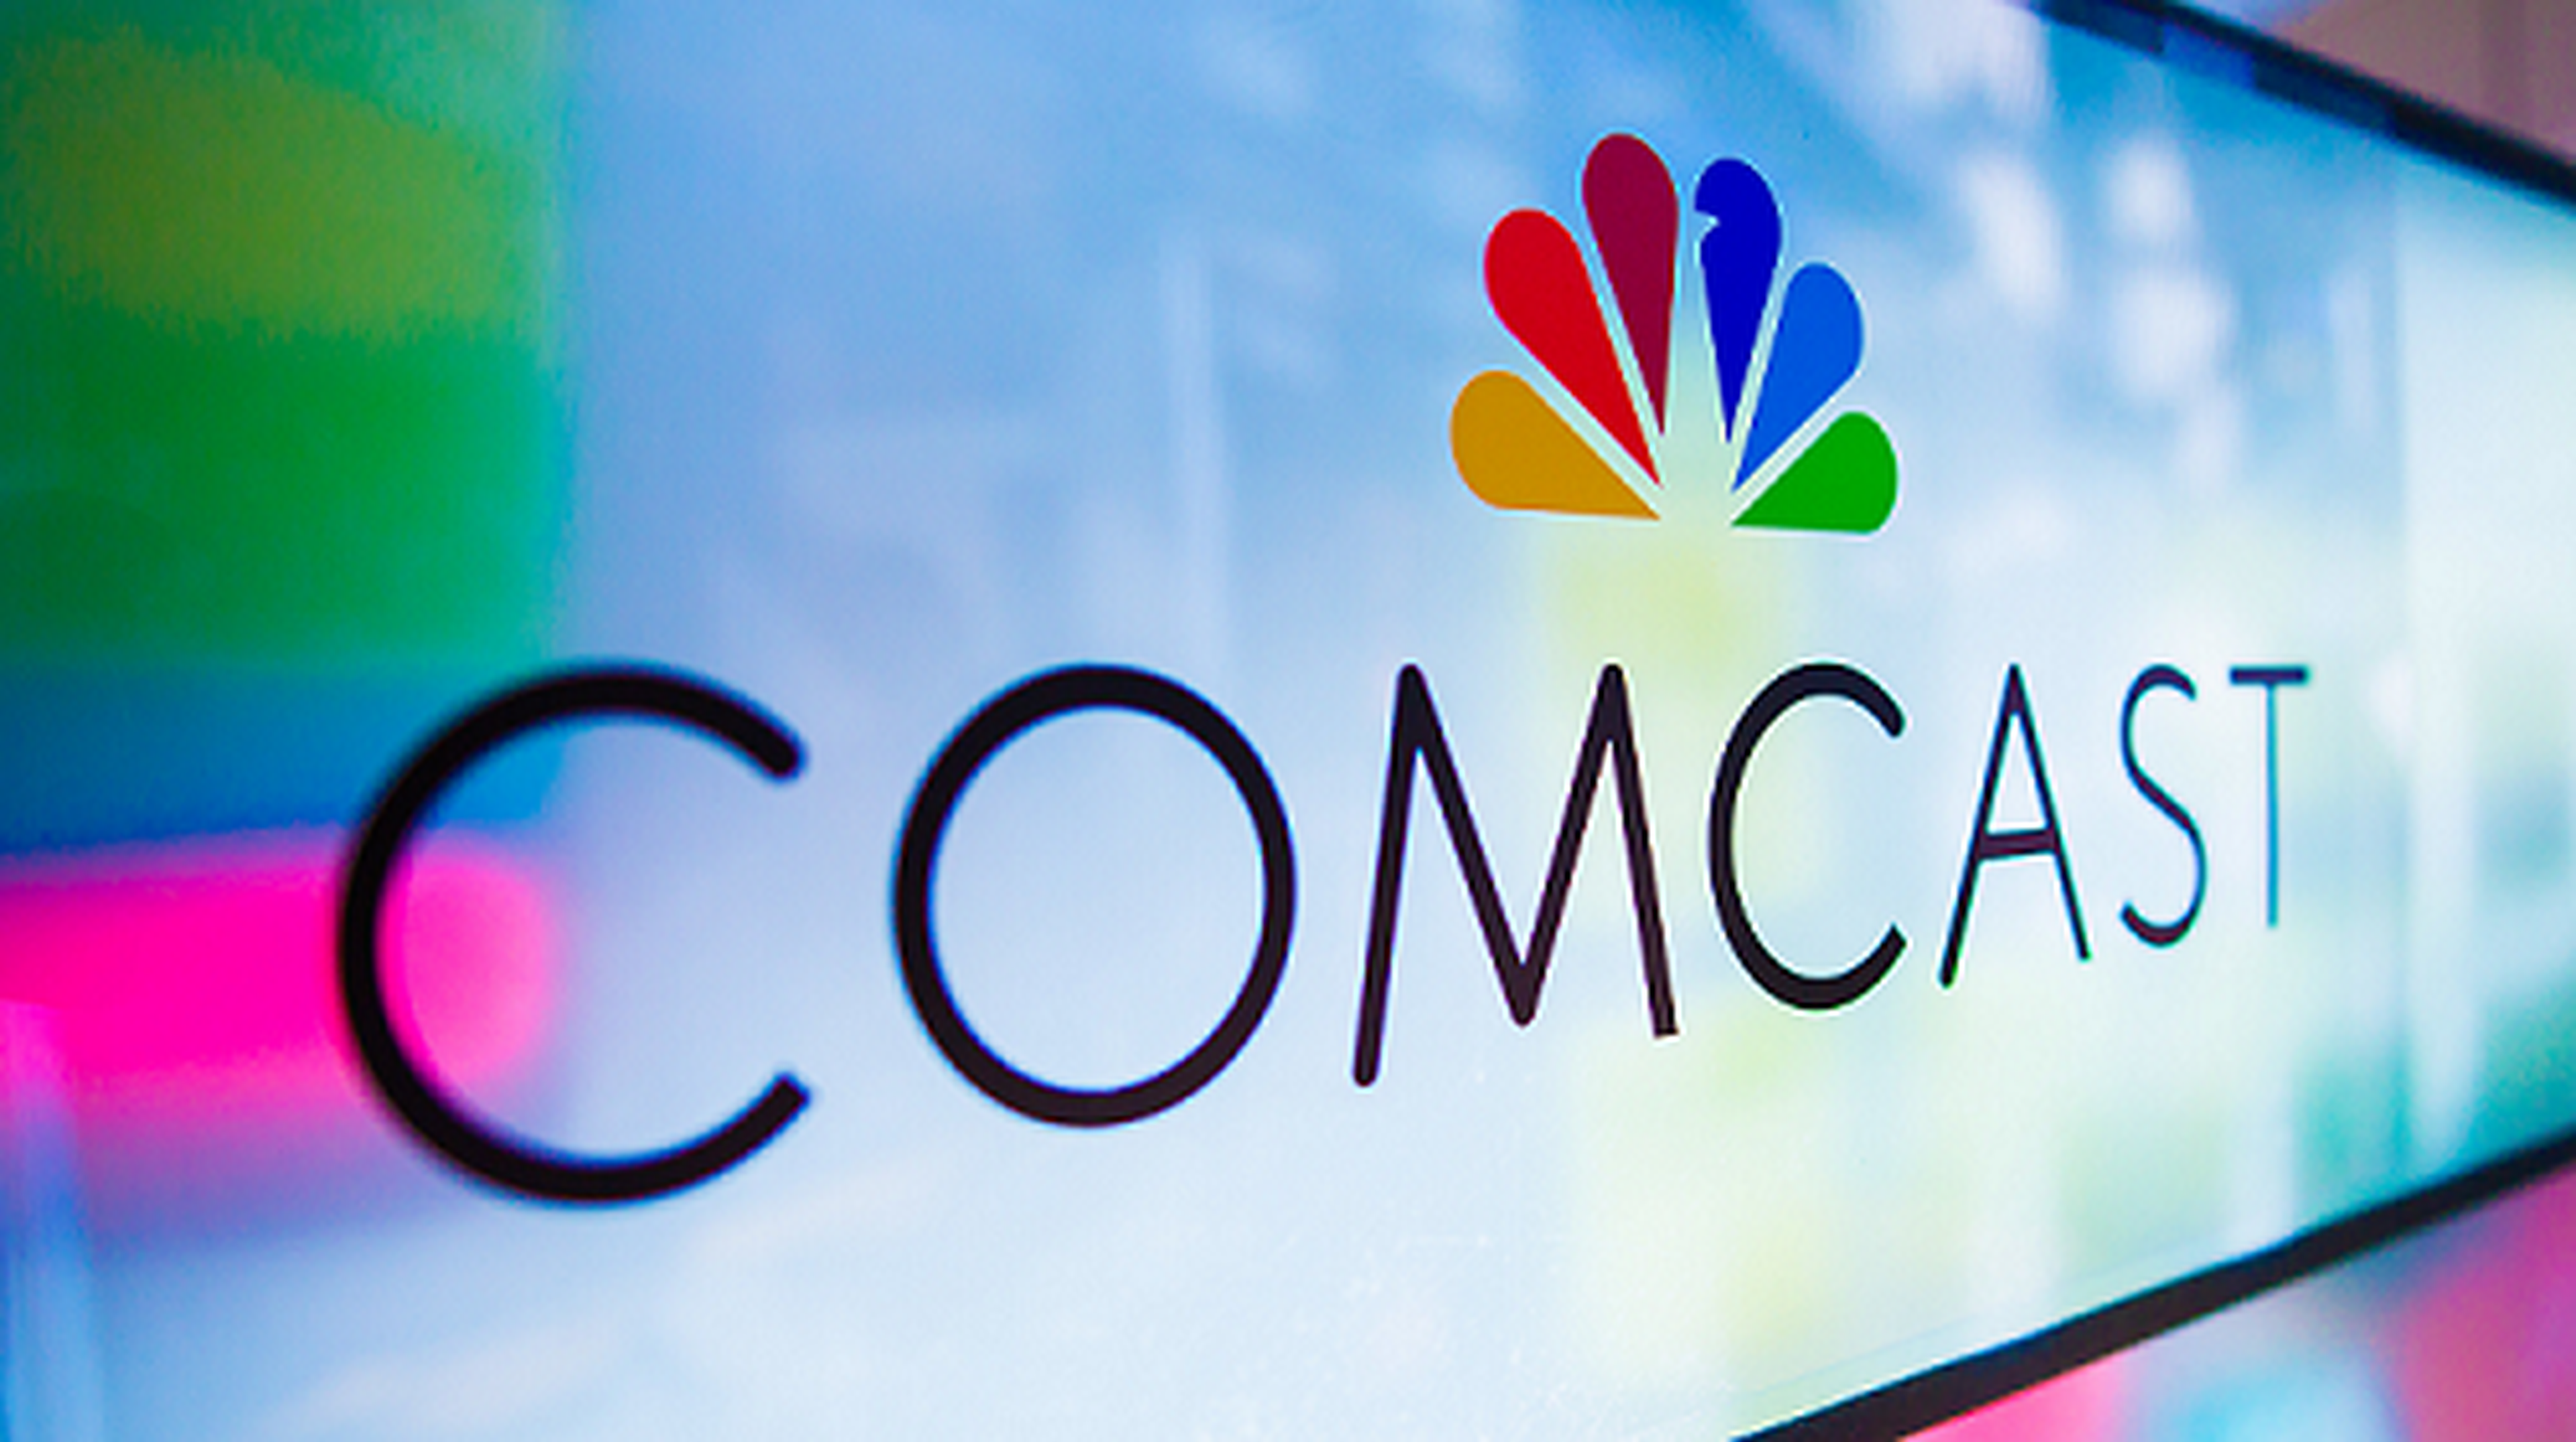 Logo de Comcast